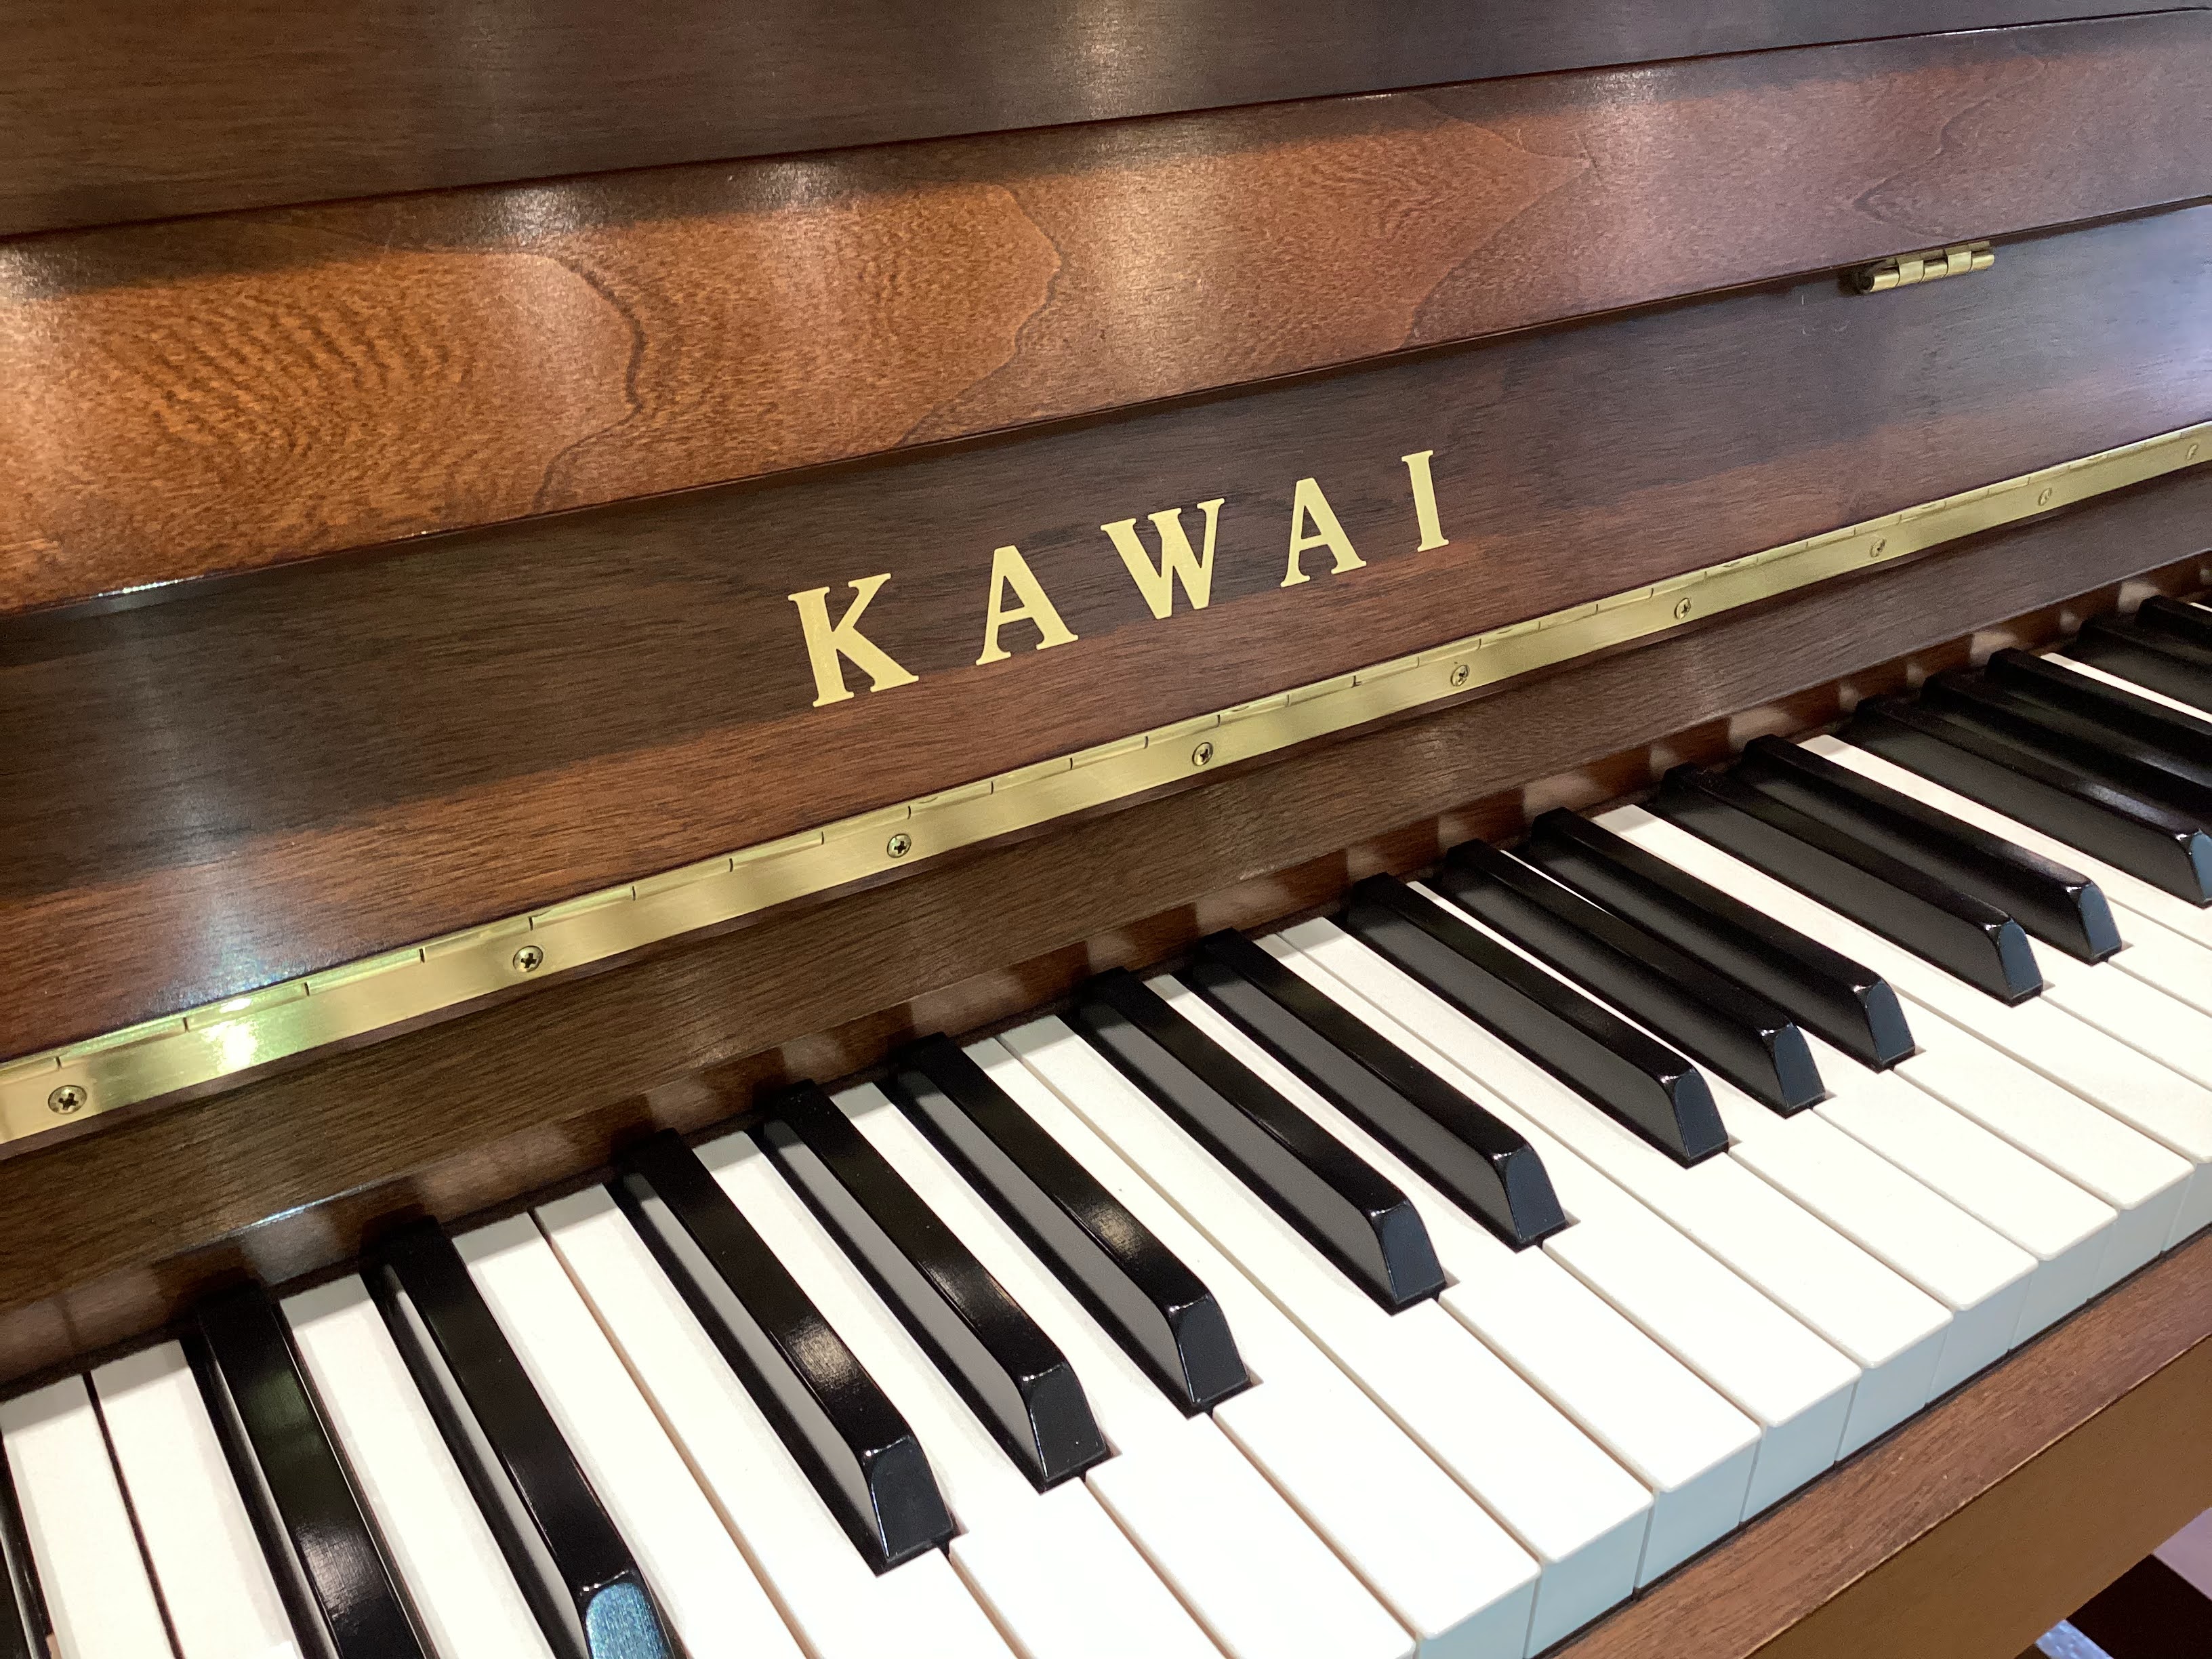 CONTENTS【展示中】C38W（2010年製）についてC38Wの主な特徴中古ピアノカワイアップライトピアノC38W2010年製造／当社ピアノ工房にて再調整済 【展示中】C38W（2010年製）について コンパクトな木目ピアノとして人気のピアノです。天然木のバーチを外装化粧板に使用。シンプルなデザ […]